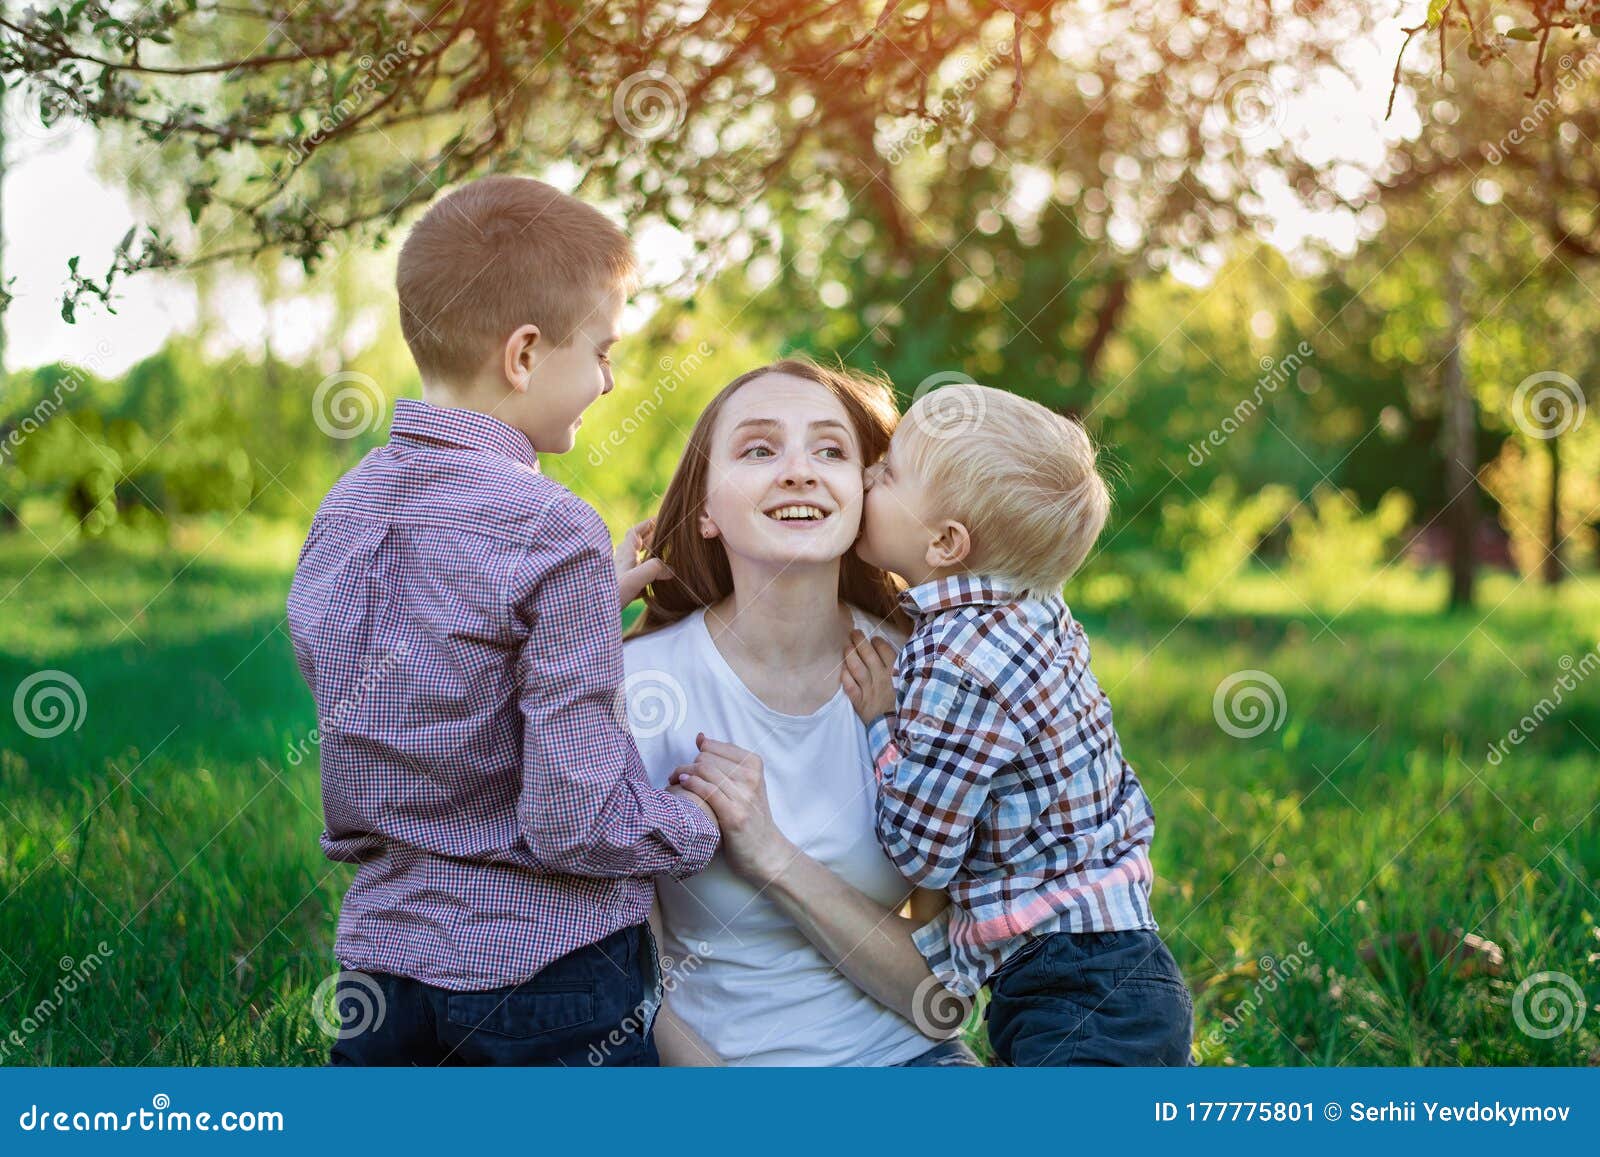 Мама и два сына русское. Мама с двумя детьми фотосессия в парке. Фотосессия с сыном подростком идеи. Мать и два сына картинки. Фото с двумя сыновьями.